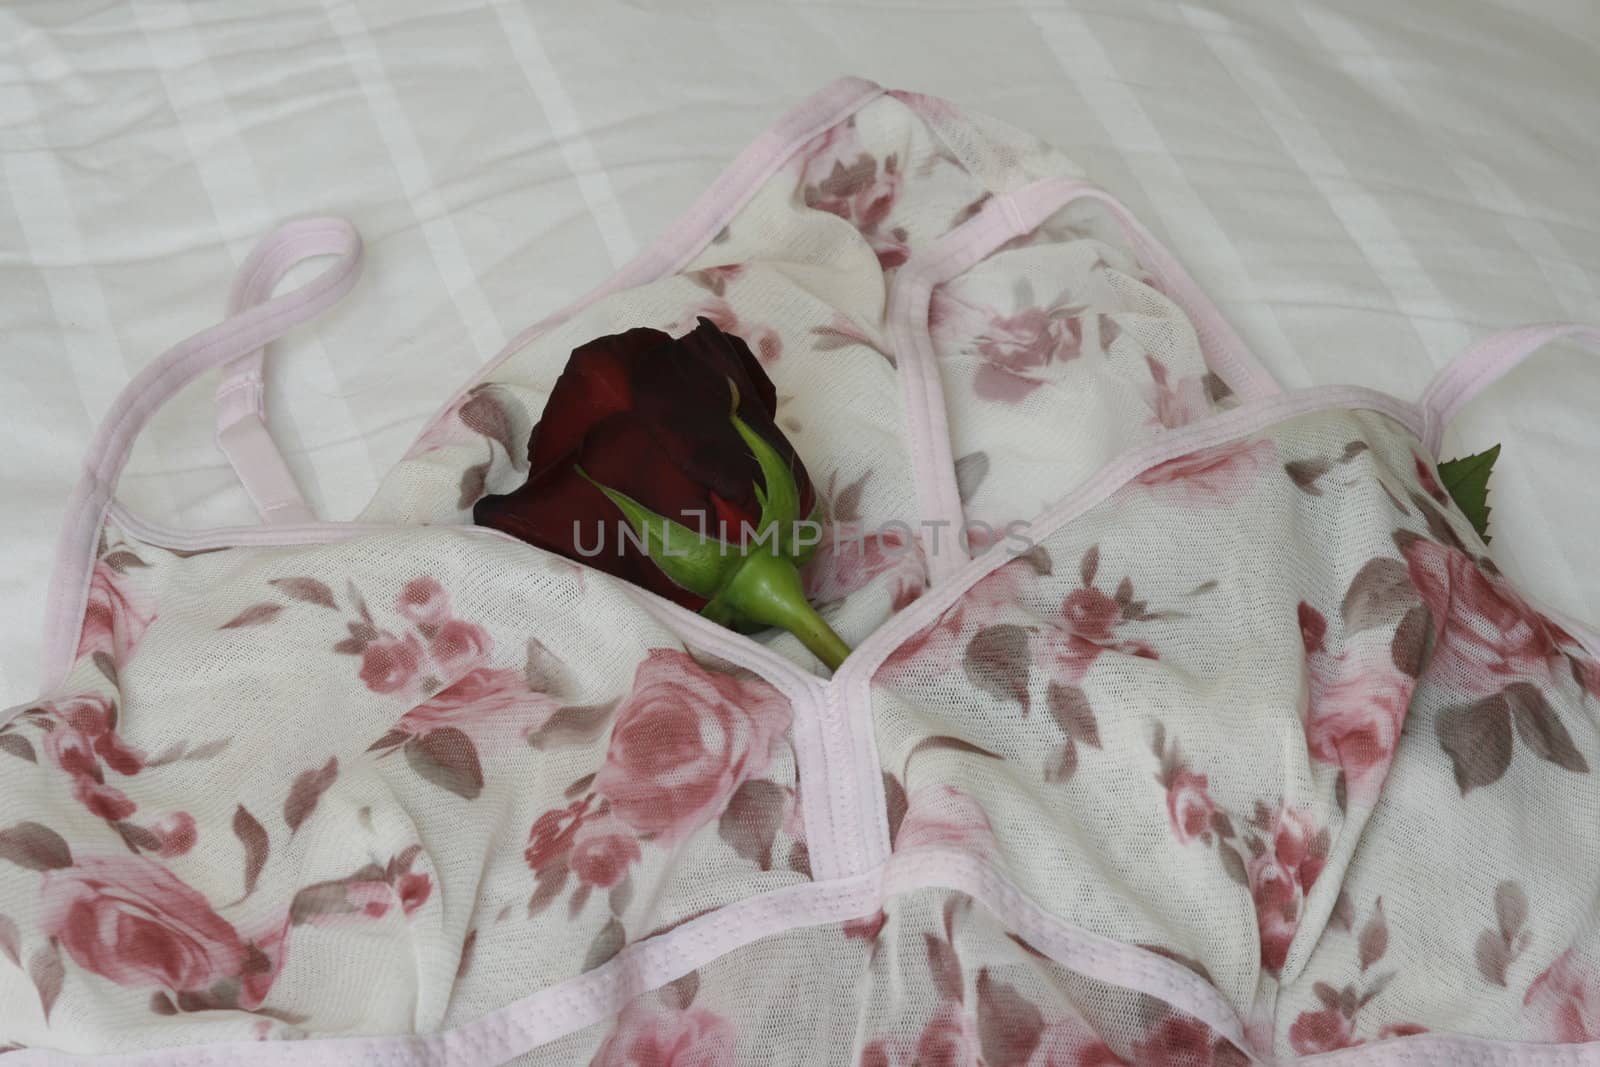 printed on ladies' underwear with rose by koep